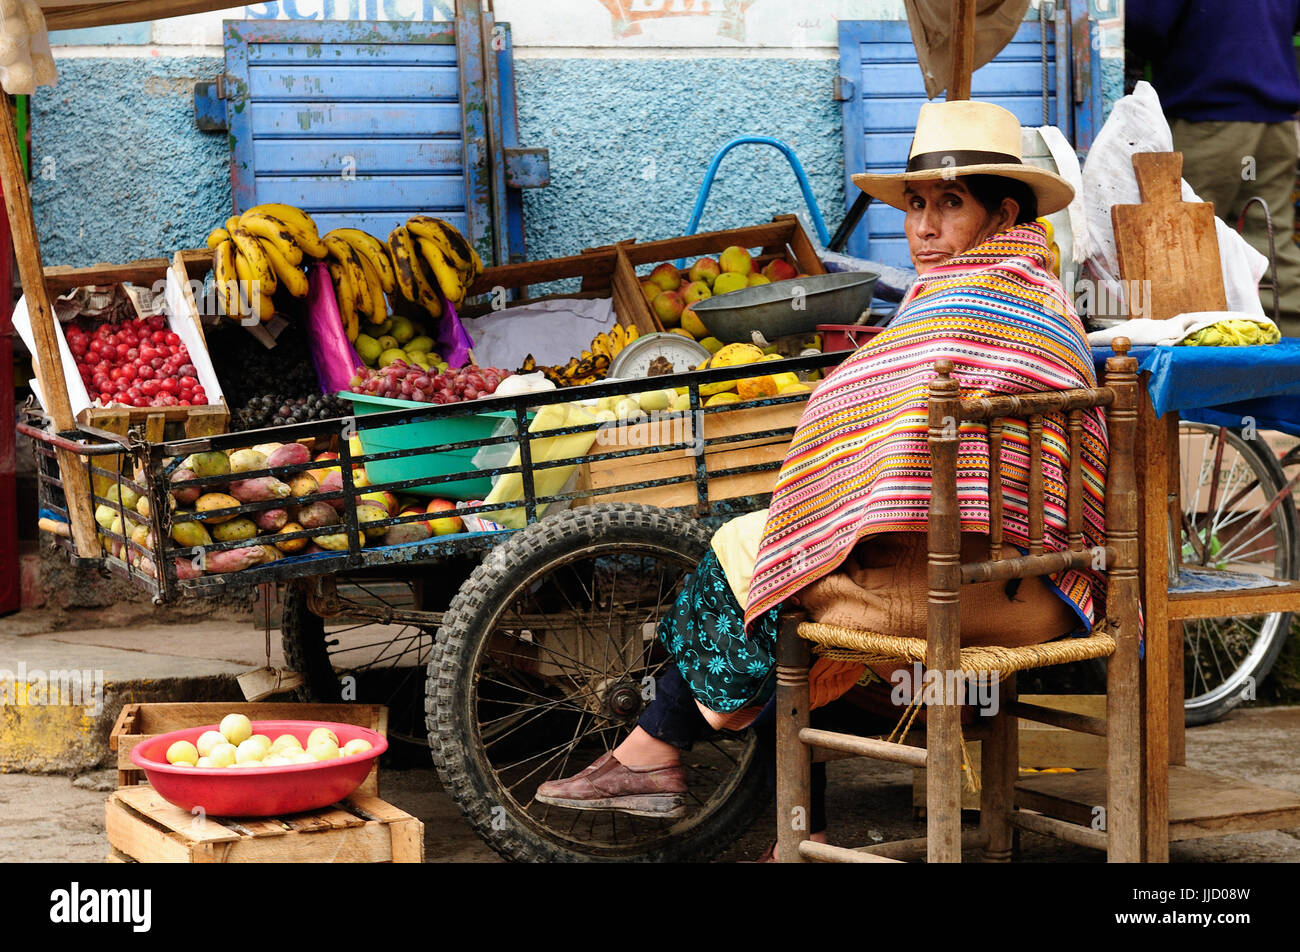 CHIQUIAN, PÉROU - 10 février : Les autochtones du Pérou fruits vente de la brouette sur la ville en Amérique du Sud dans les rues de la ville Chiqui Banque D'Images